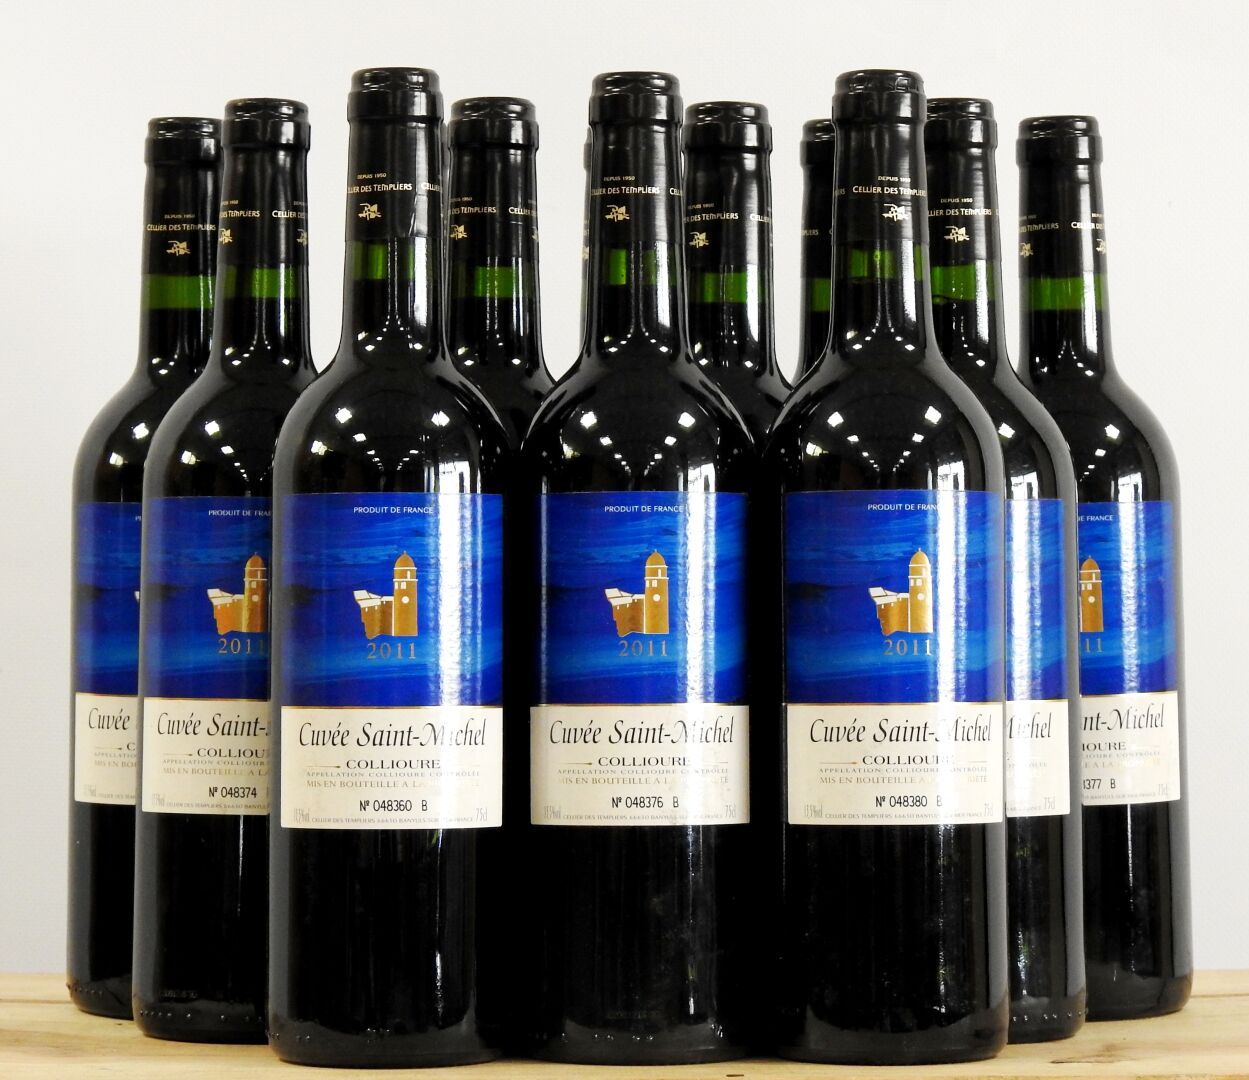 Null 15 bottles

Cuvée Saint Michel - Collioure - Cellier des Templiers - 2011

&hellip;